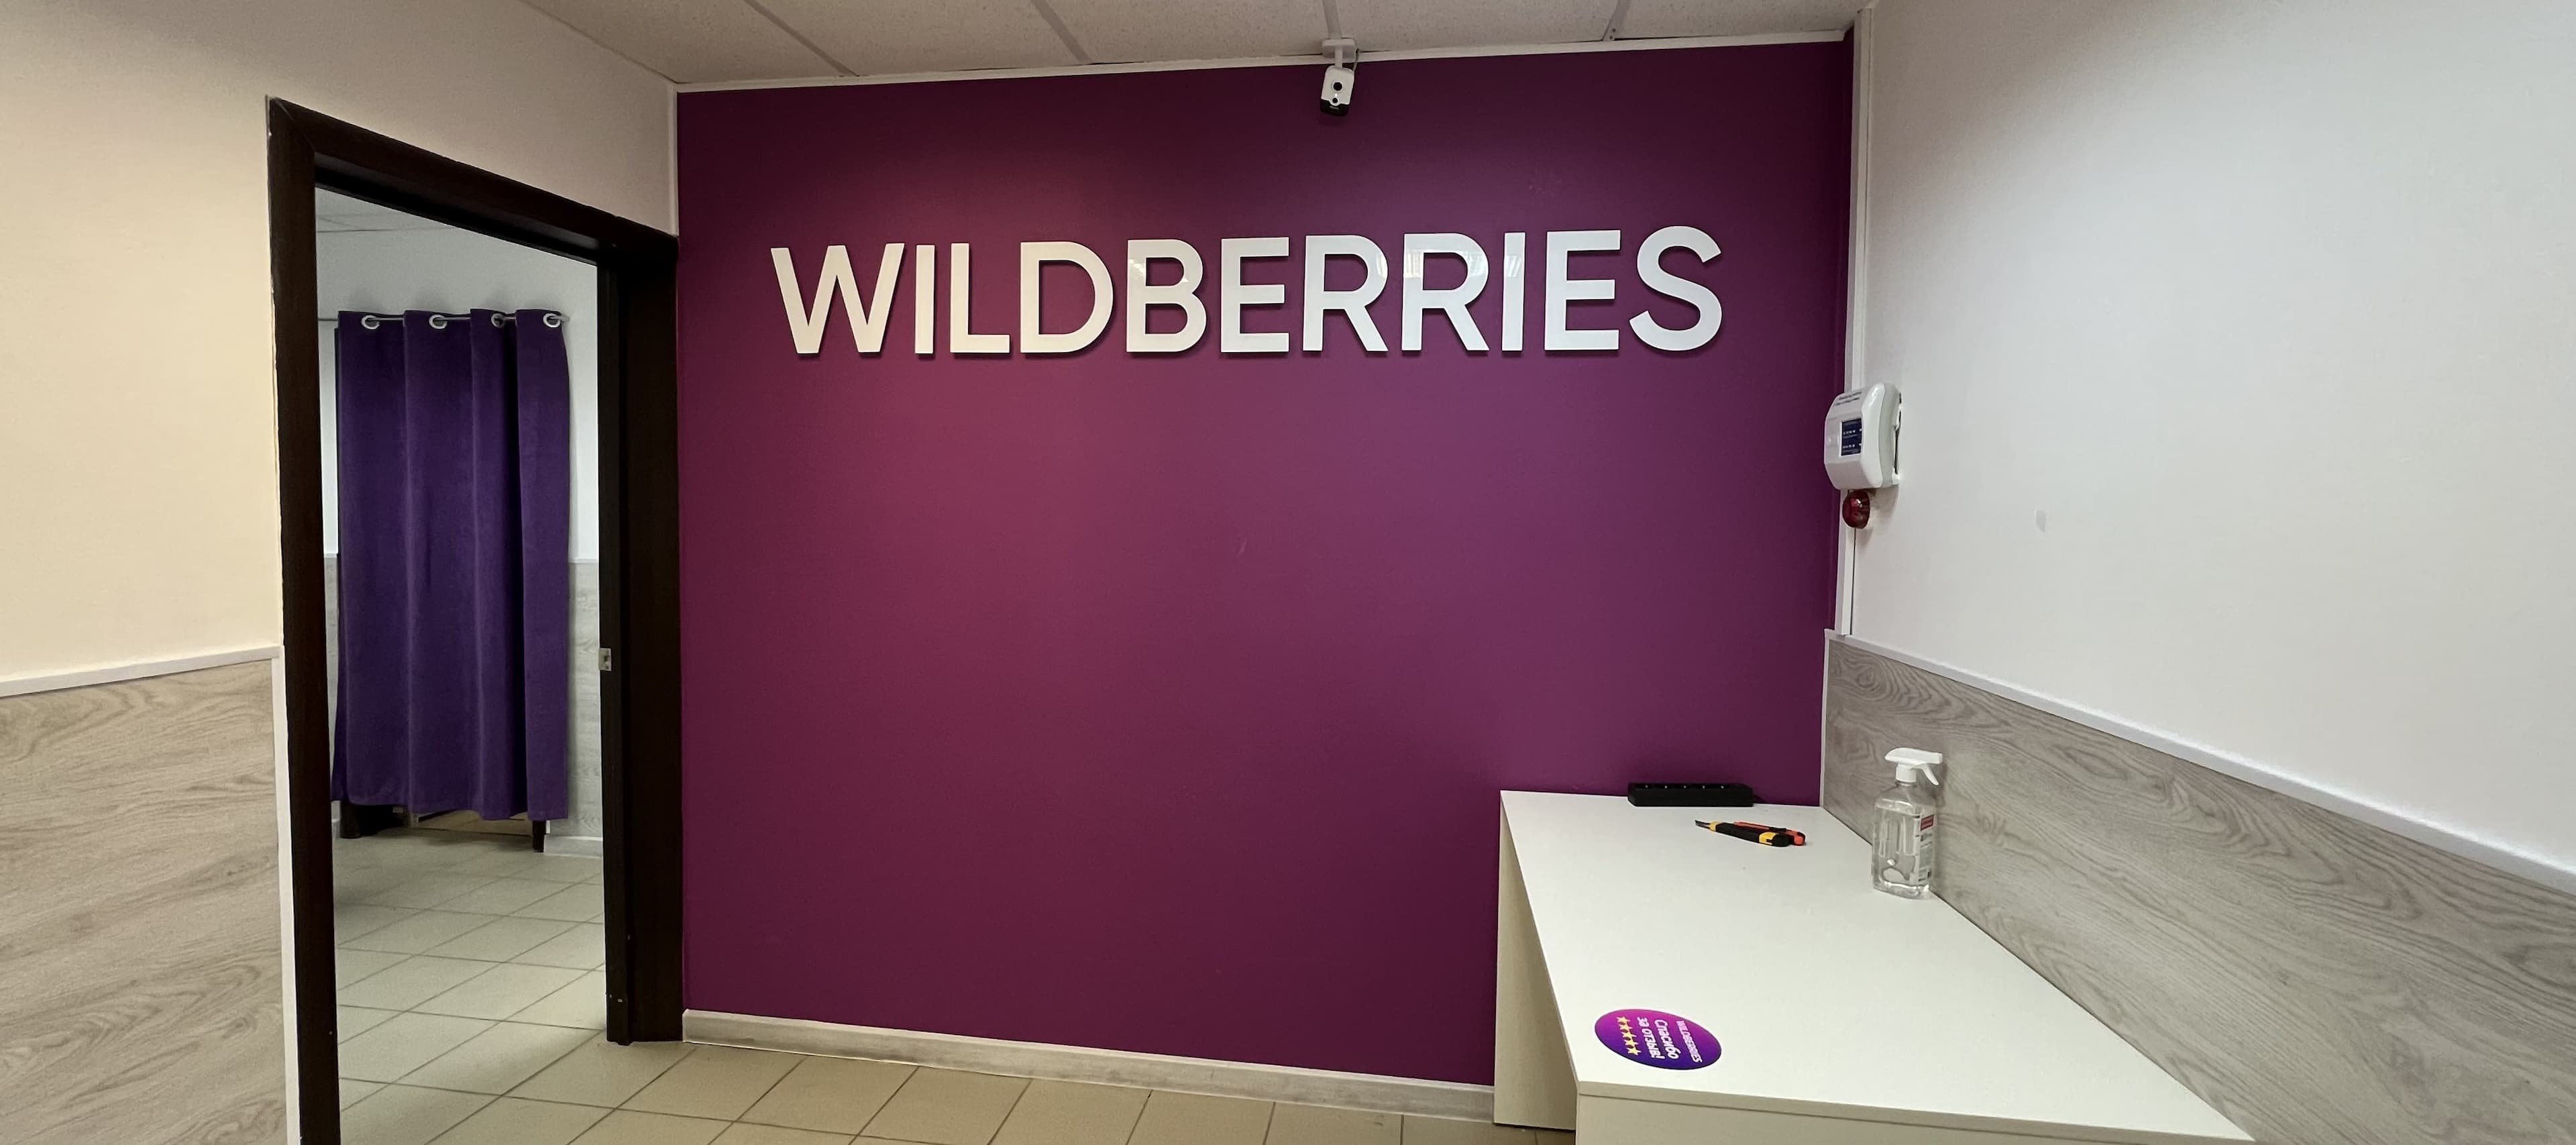 Фото новости: "Wildberries запустил билетный сервис"